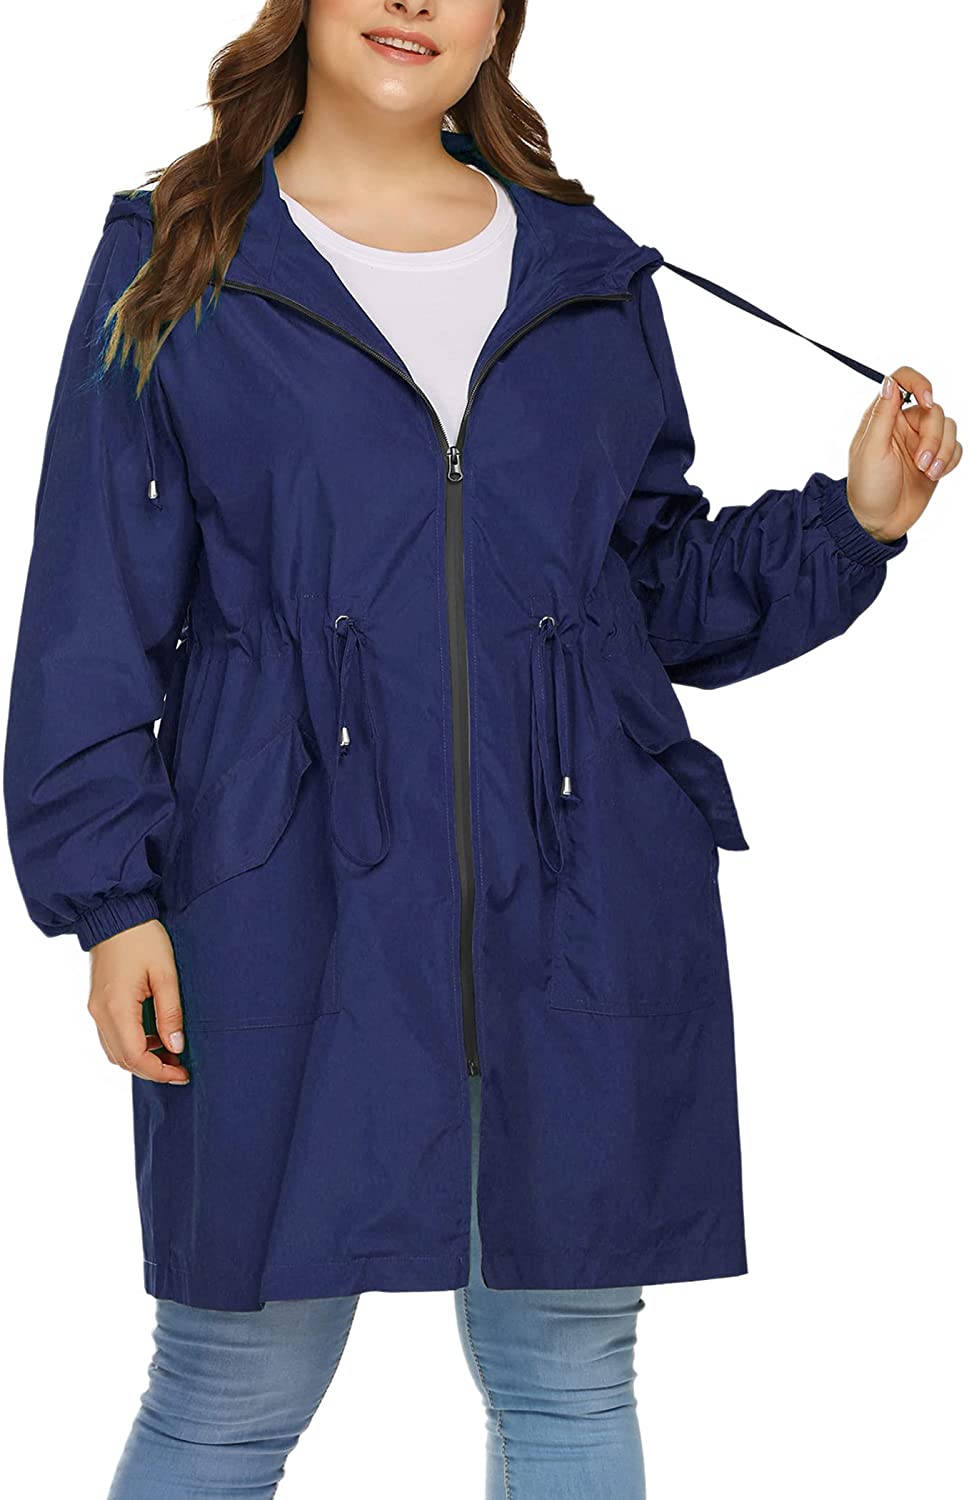 IN'VOLAND Women's Rain Jacket Plus Size Long Raincoat Lightweight Hooded  Windbre | eBay